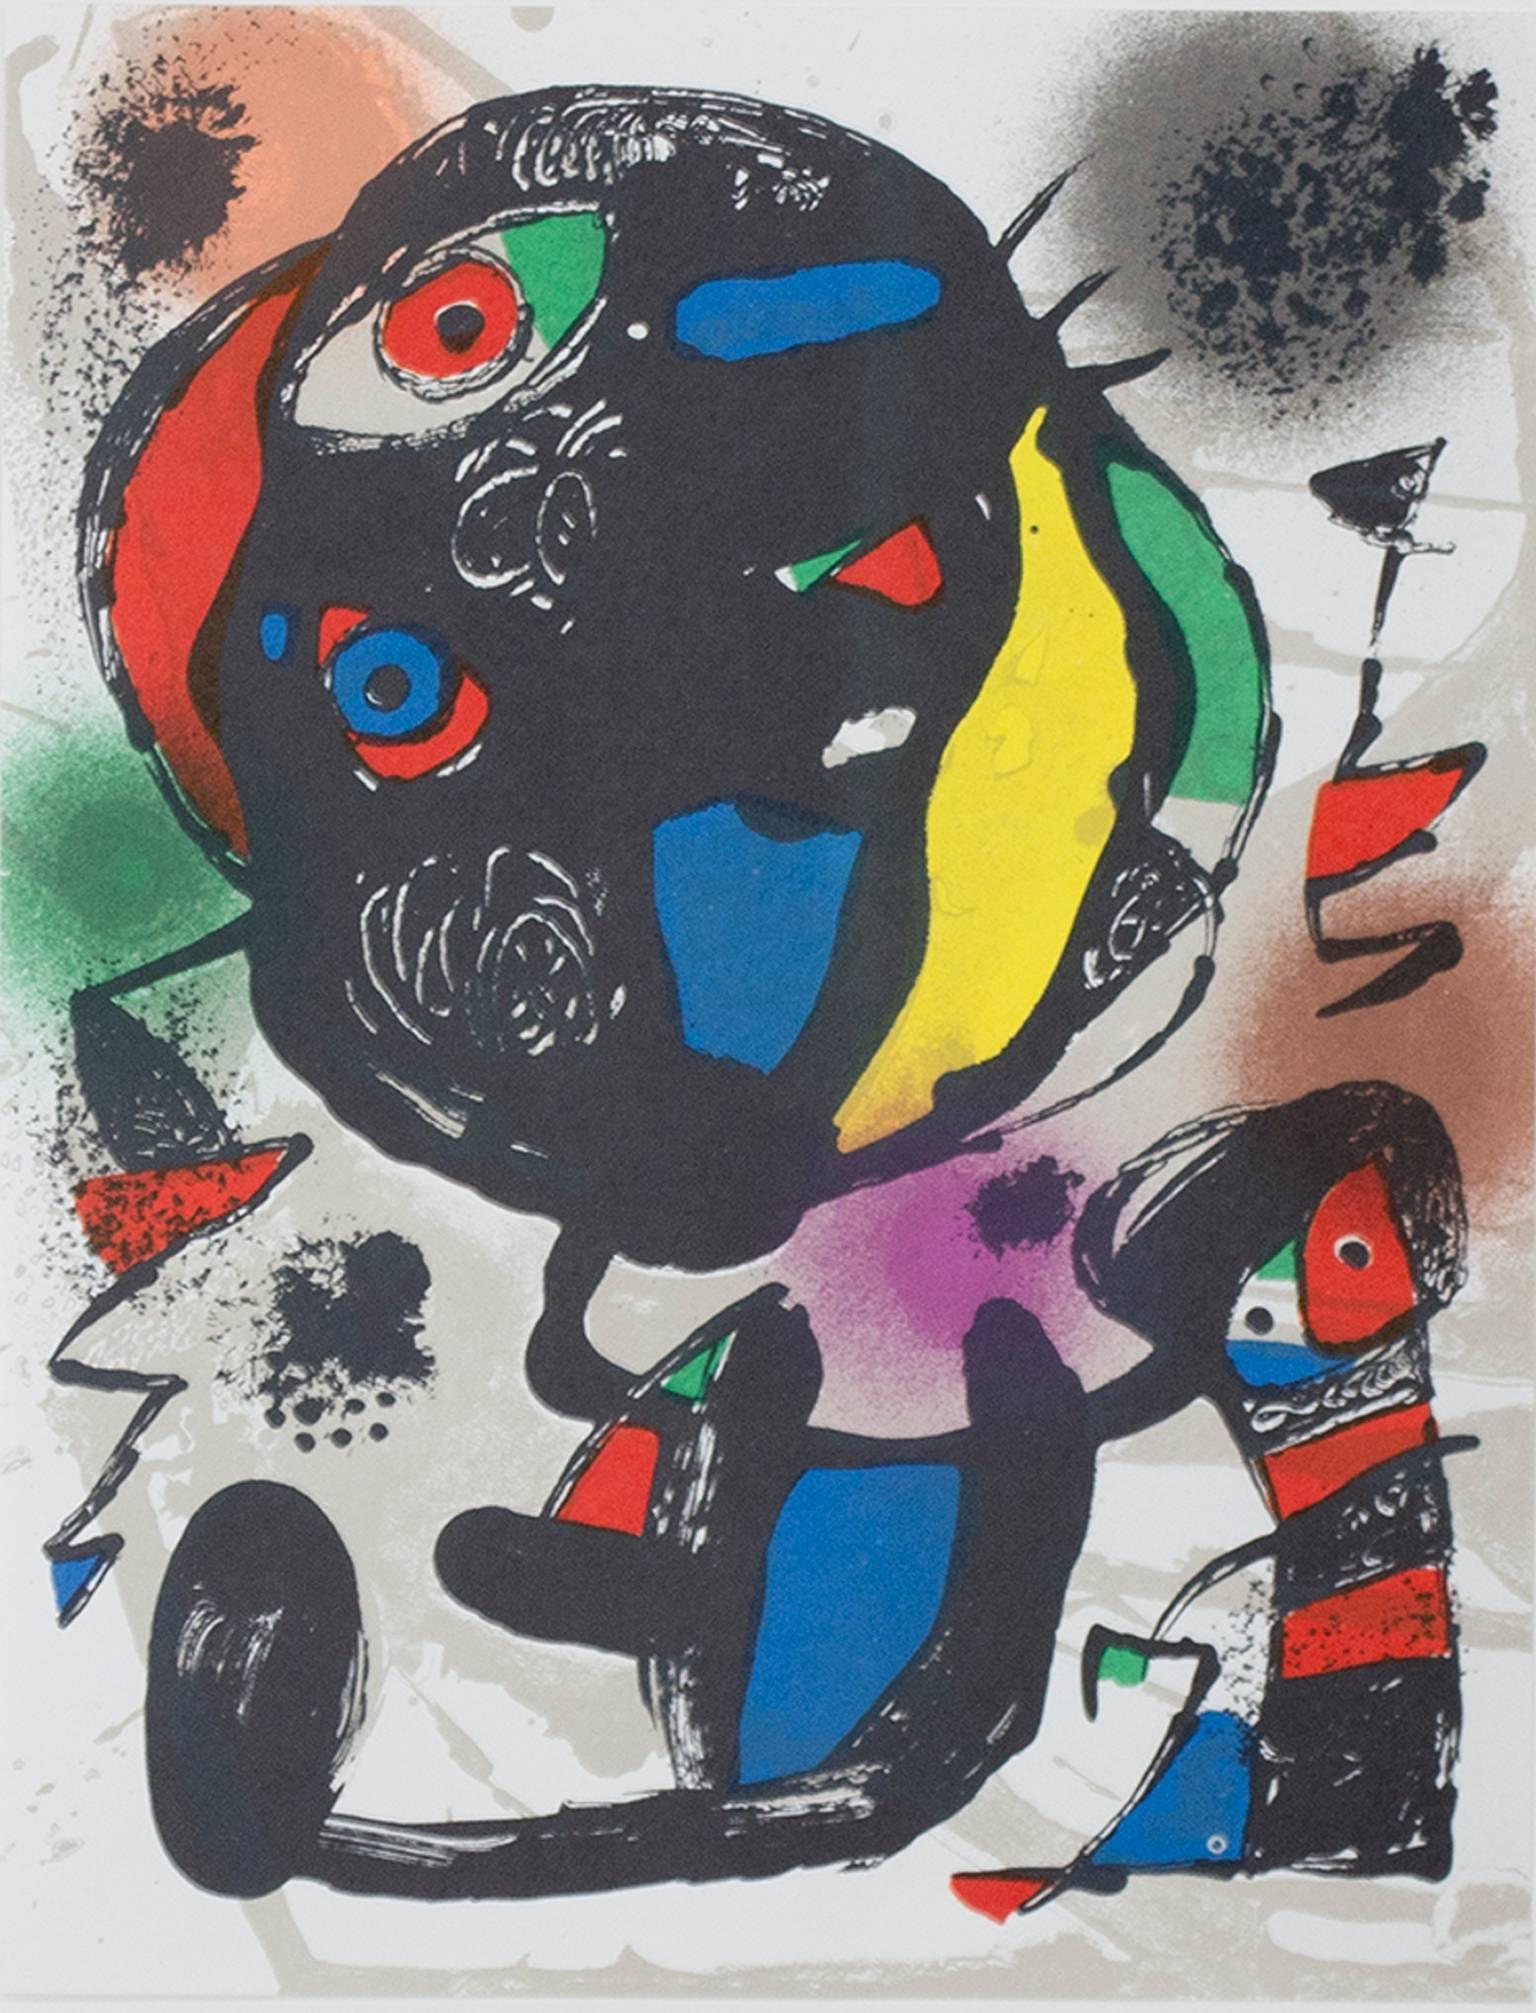 "Lithographie Originale V" ist eine originale Farblithographie von Joan Miro, die 1981 in "Miro Lithographs IV, Maeght Publisher" veröffentlicht wurde. Es zeigt Miros charakteristischen biomorphen abstrakten Stil in Schwarz, Grün, Gelb, Rot und